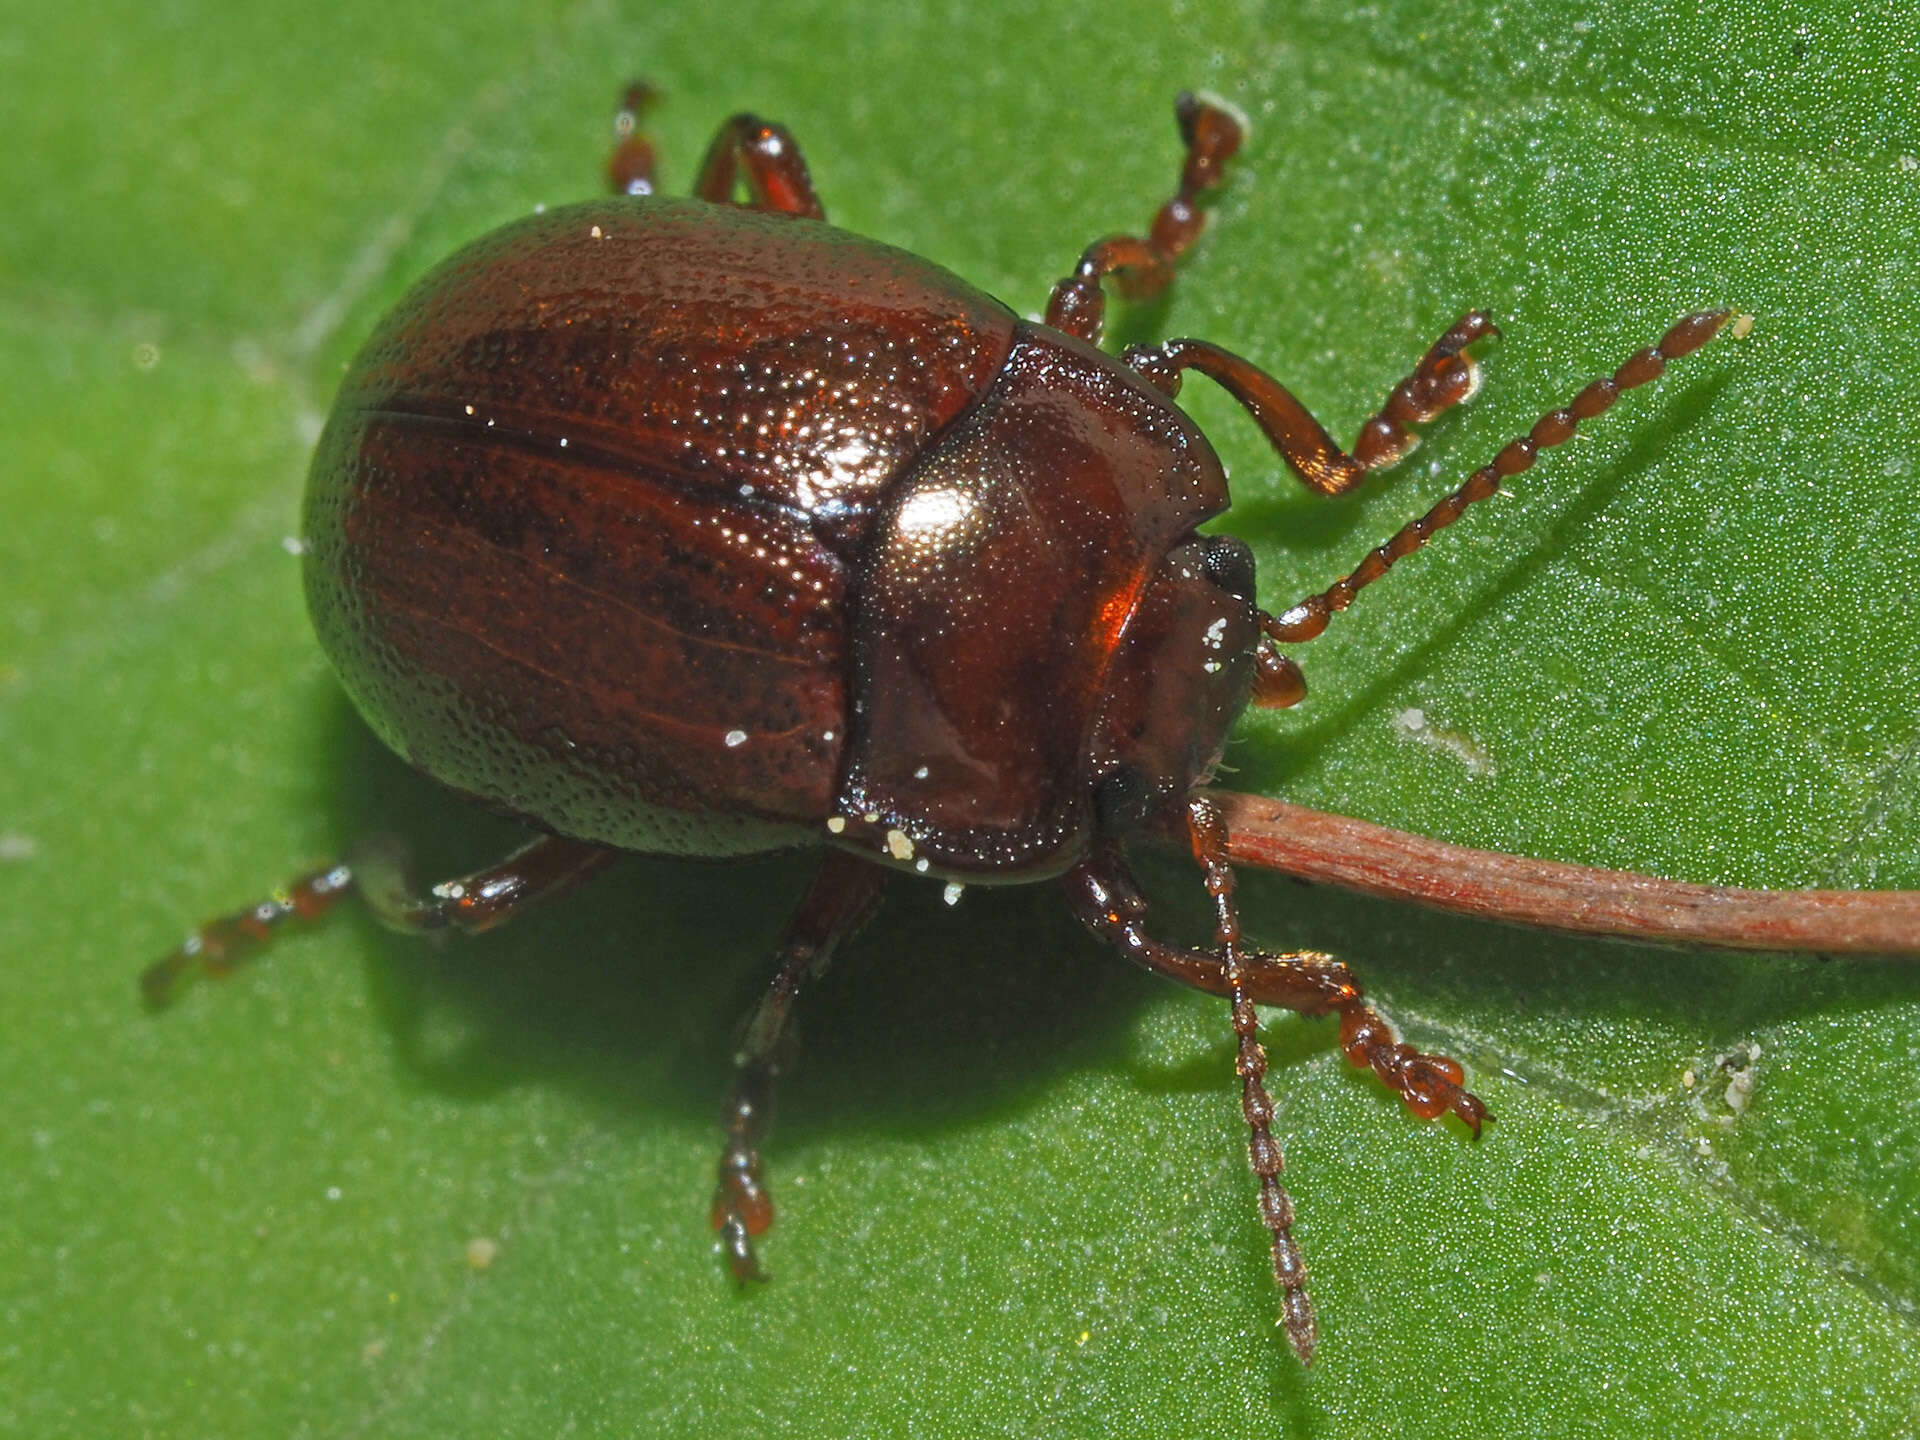 Image of Brown mint leaf beetle